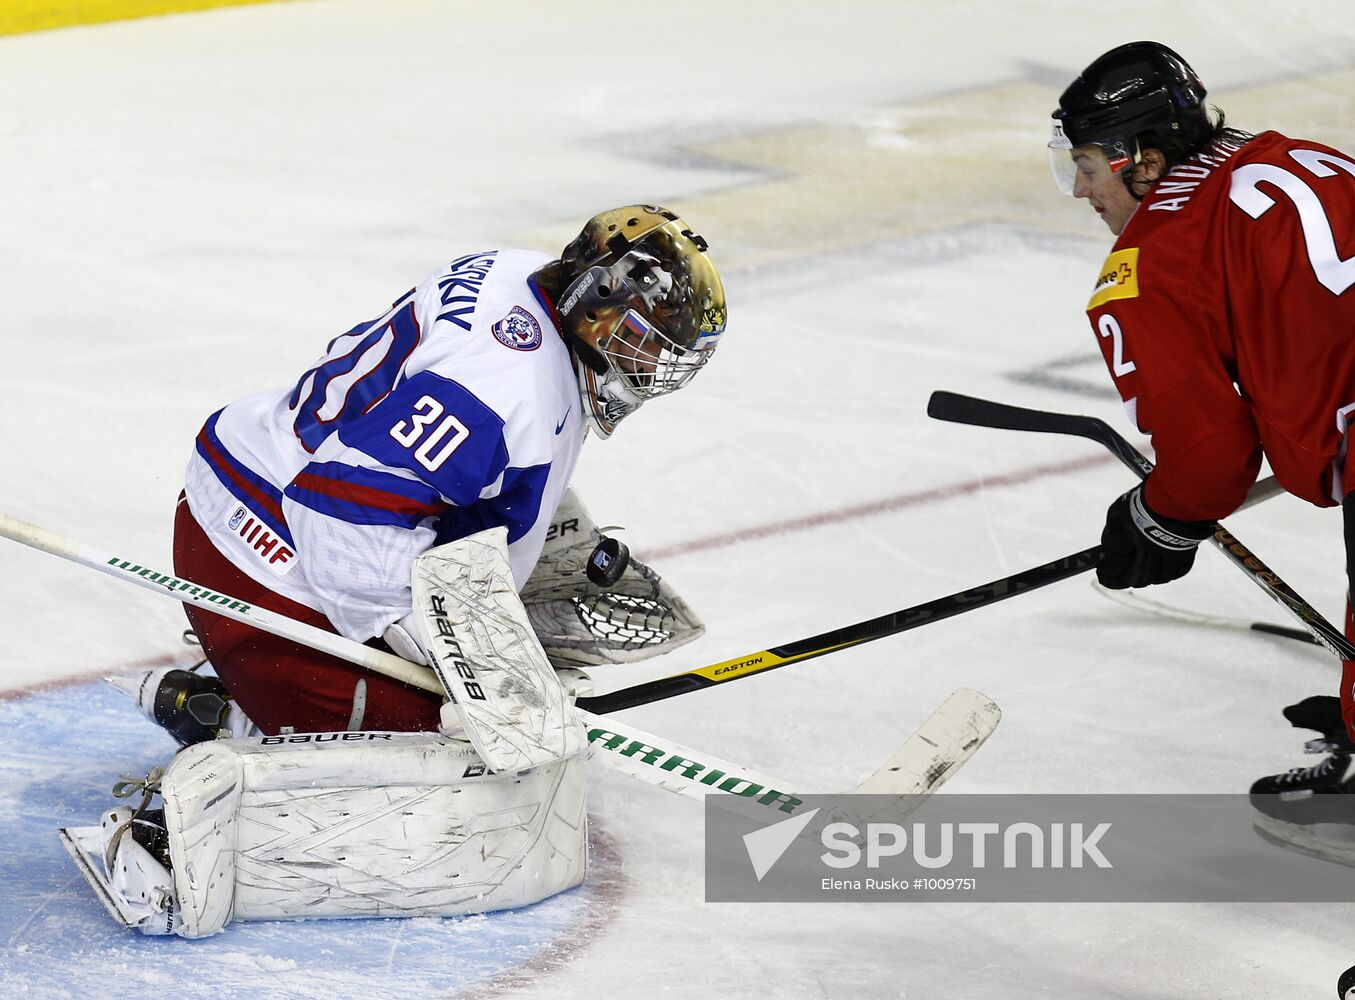 2011 World Junior Hockey Championship. Russia vs. Switzerland